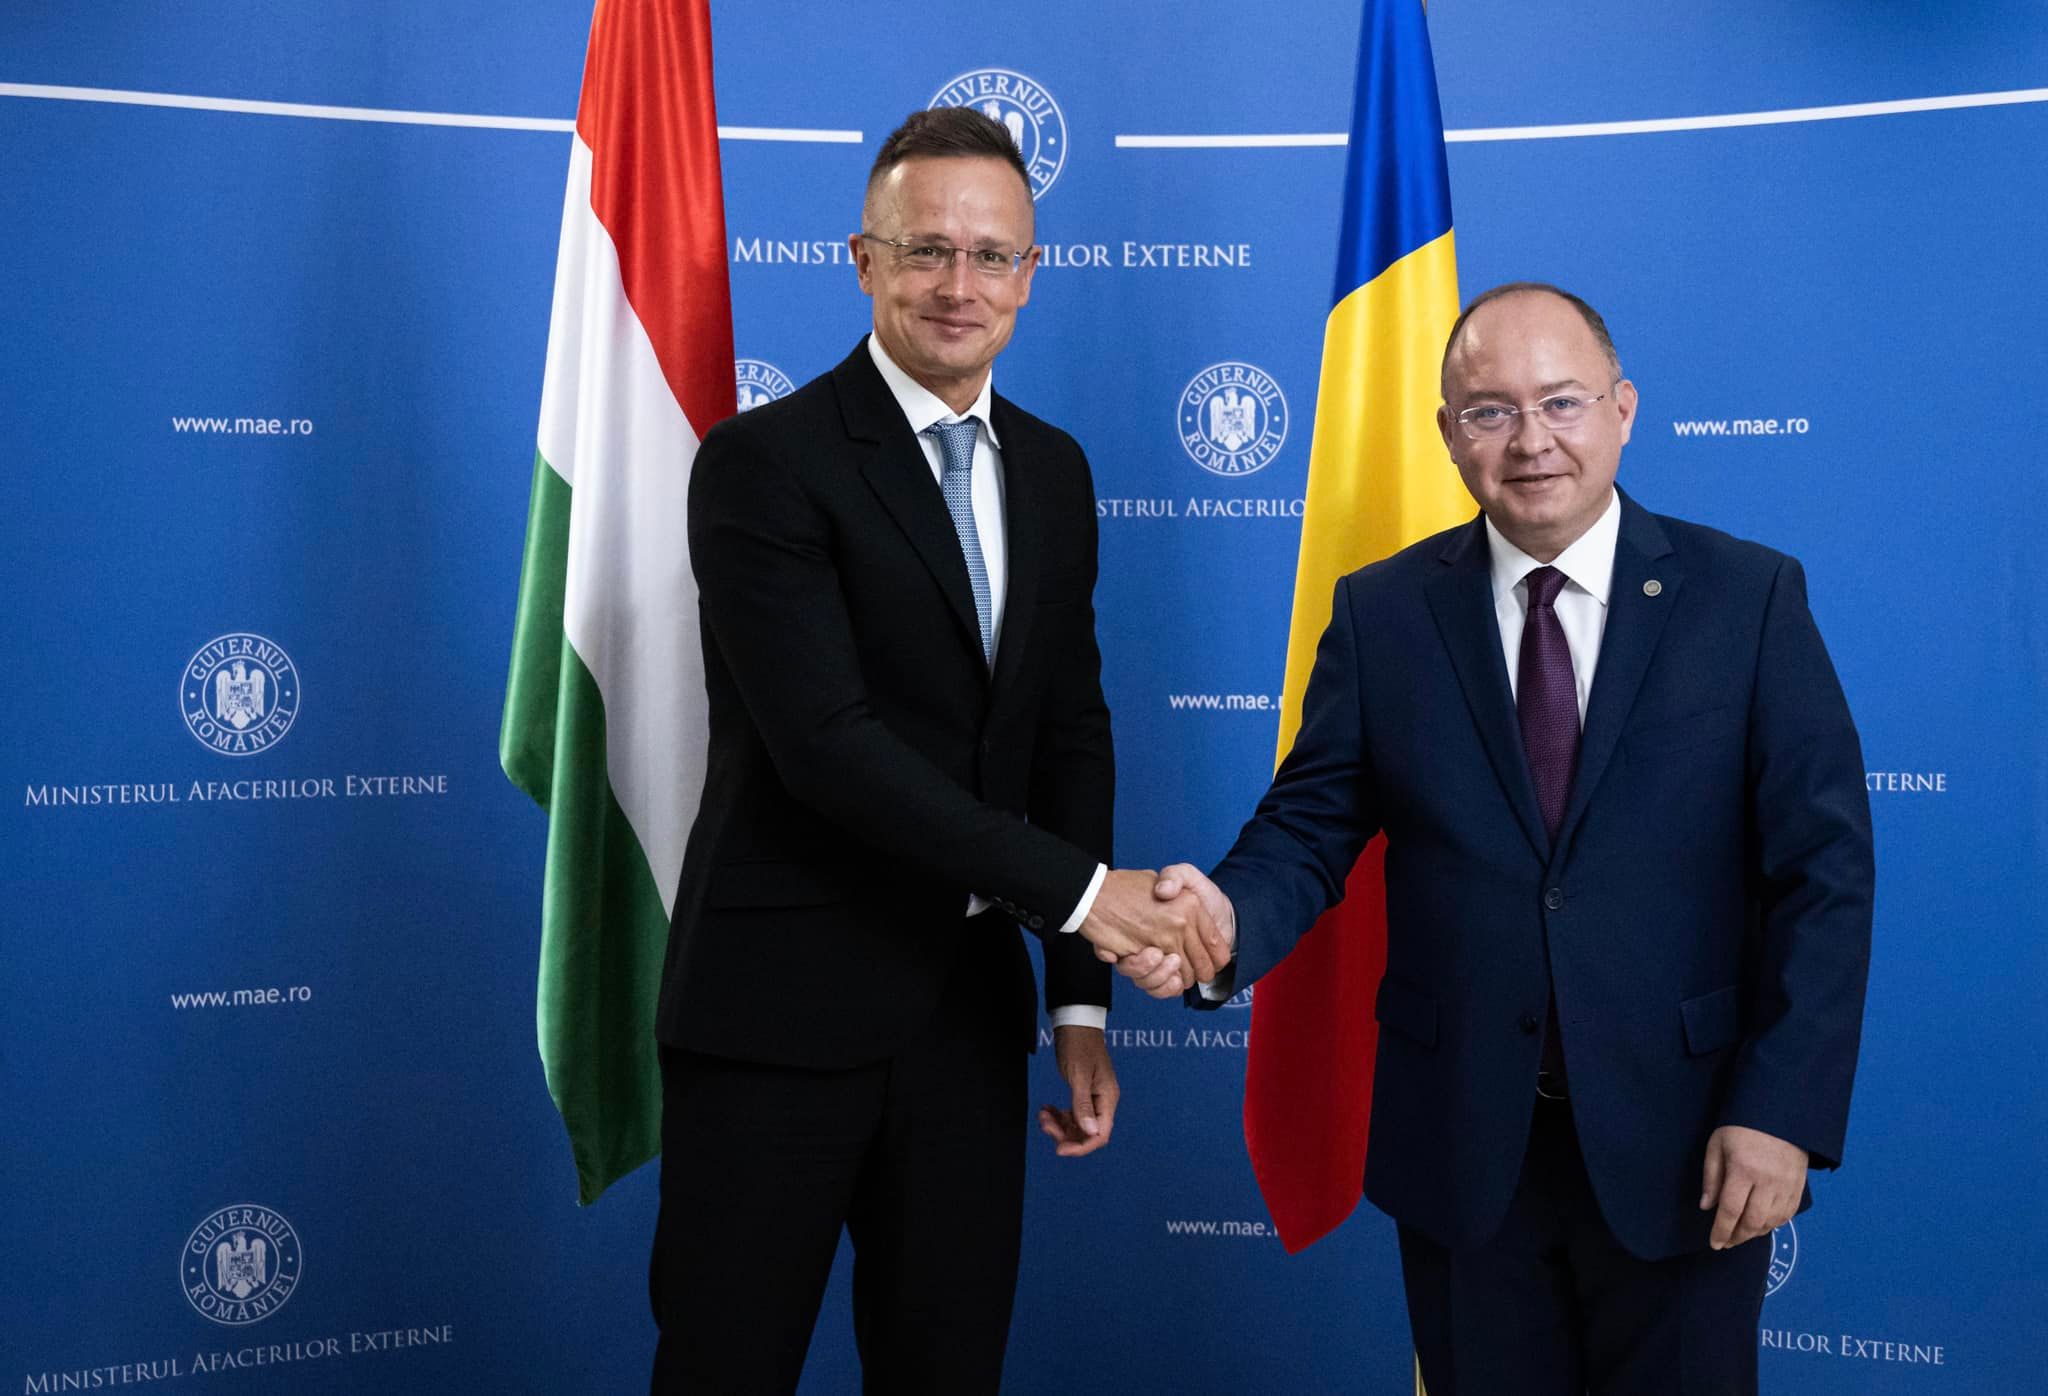 Magyarország és Románia kész segíteni egymást az energiabiztonság területén